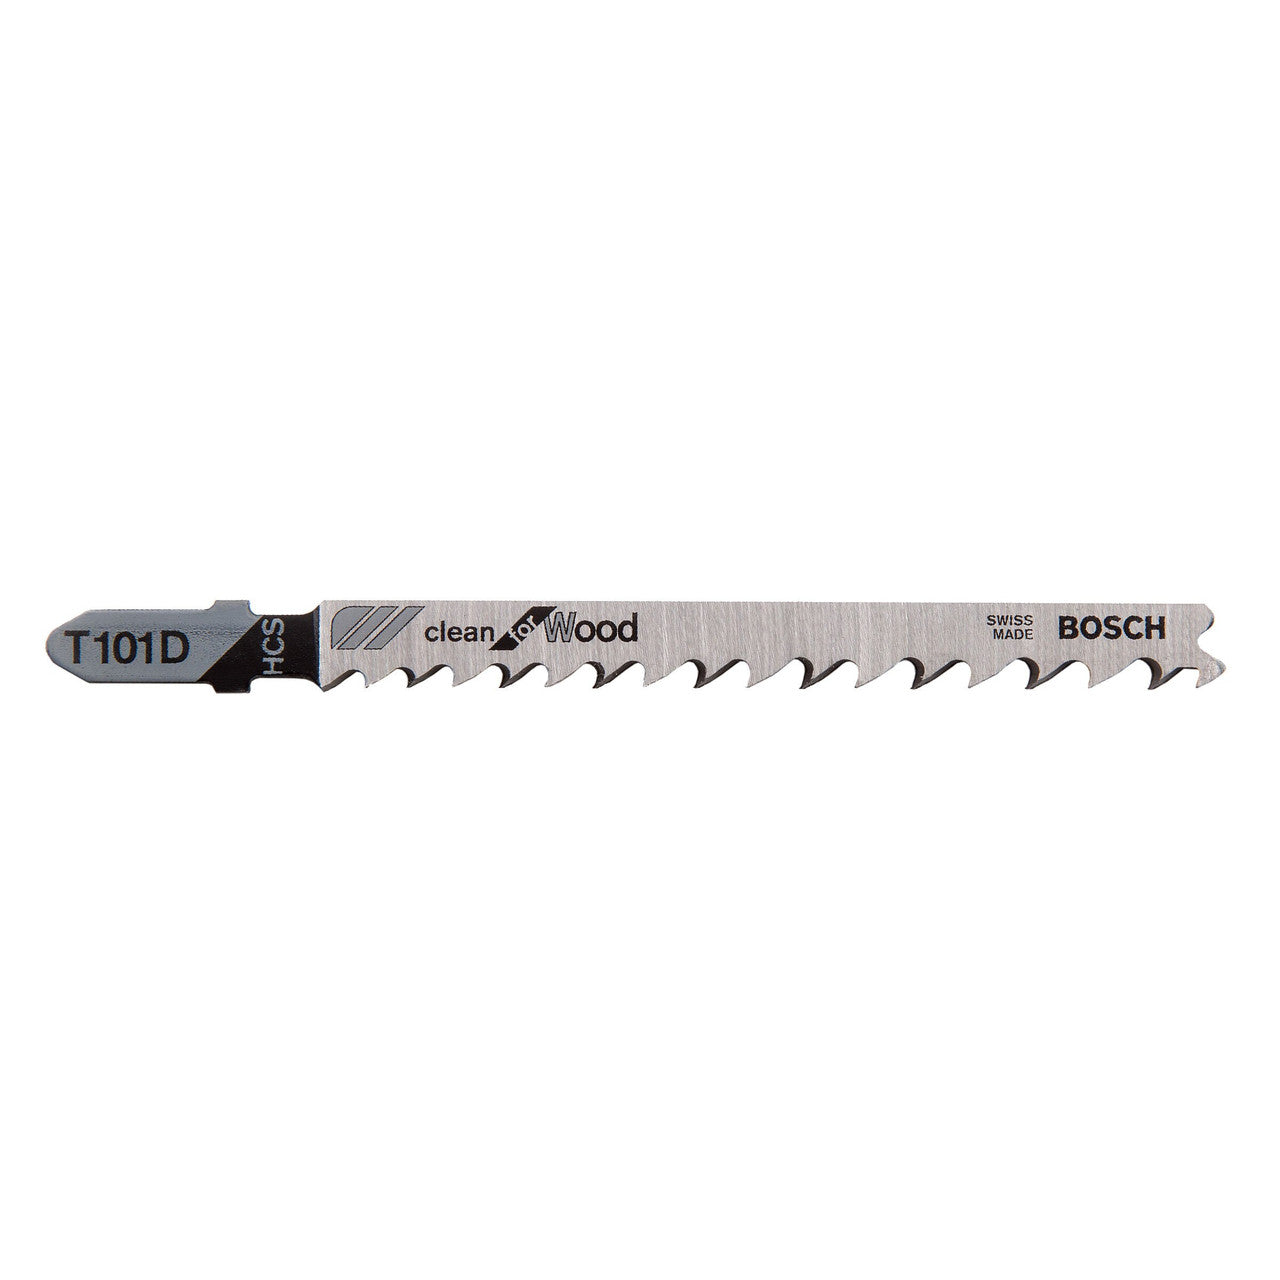 Bosch Jigsaw Blades T 101 D 5 Pack 2608630032 Power Tool Services